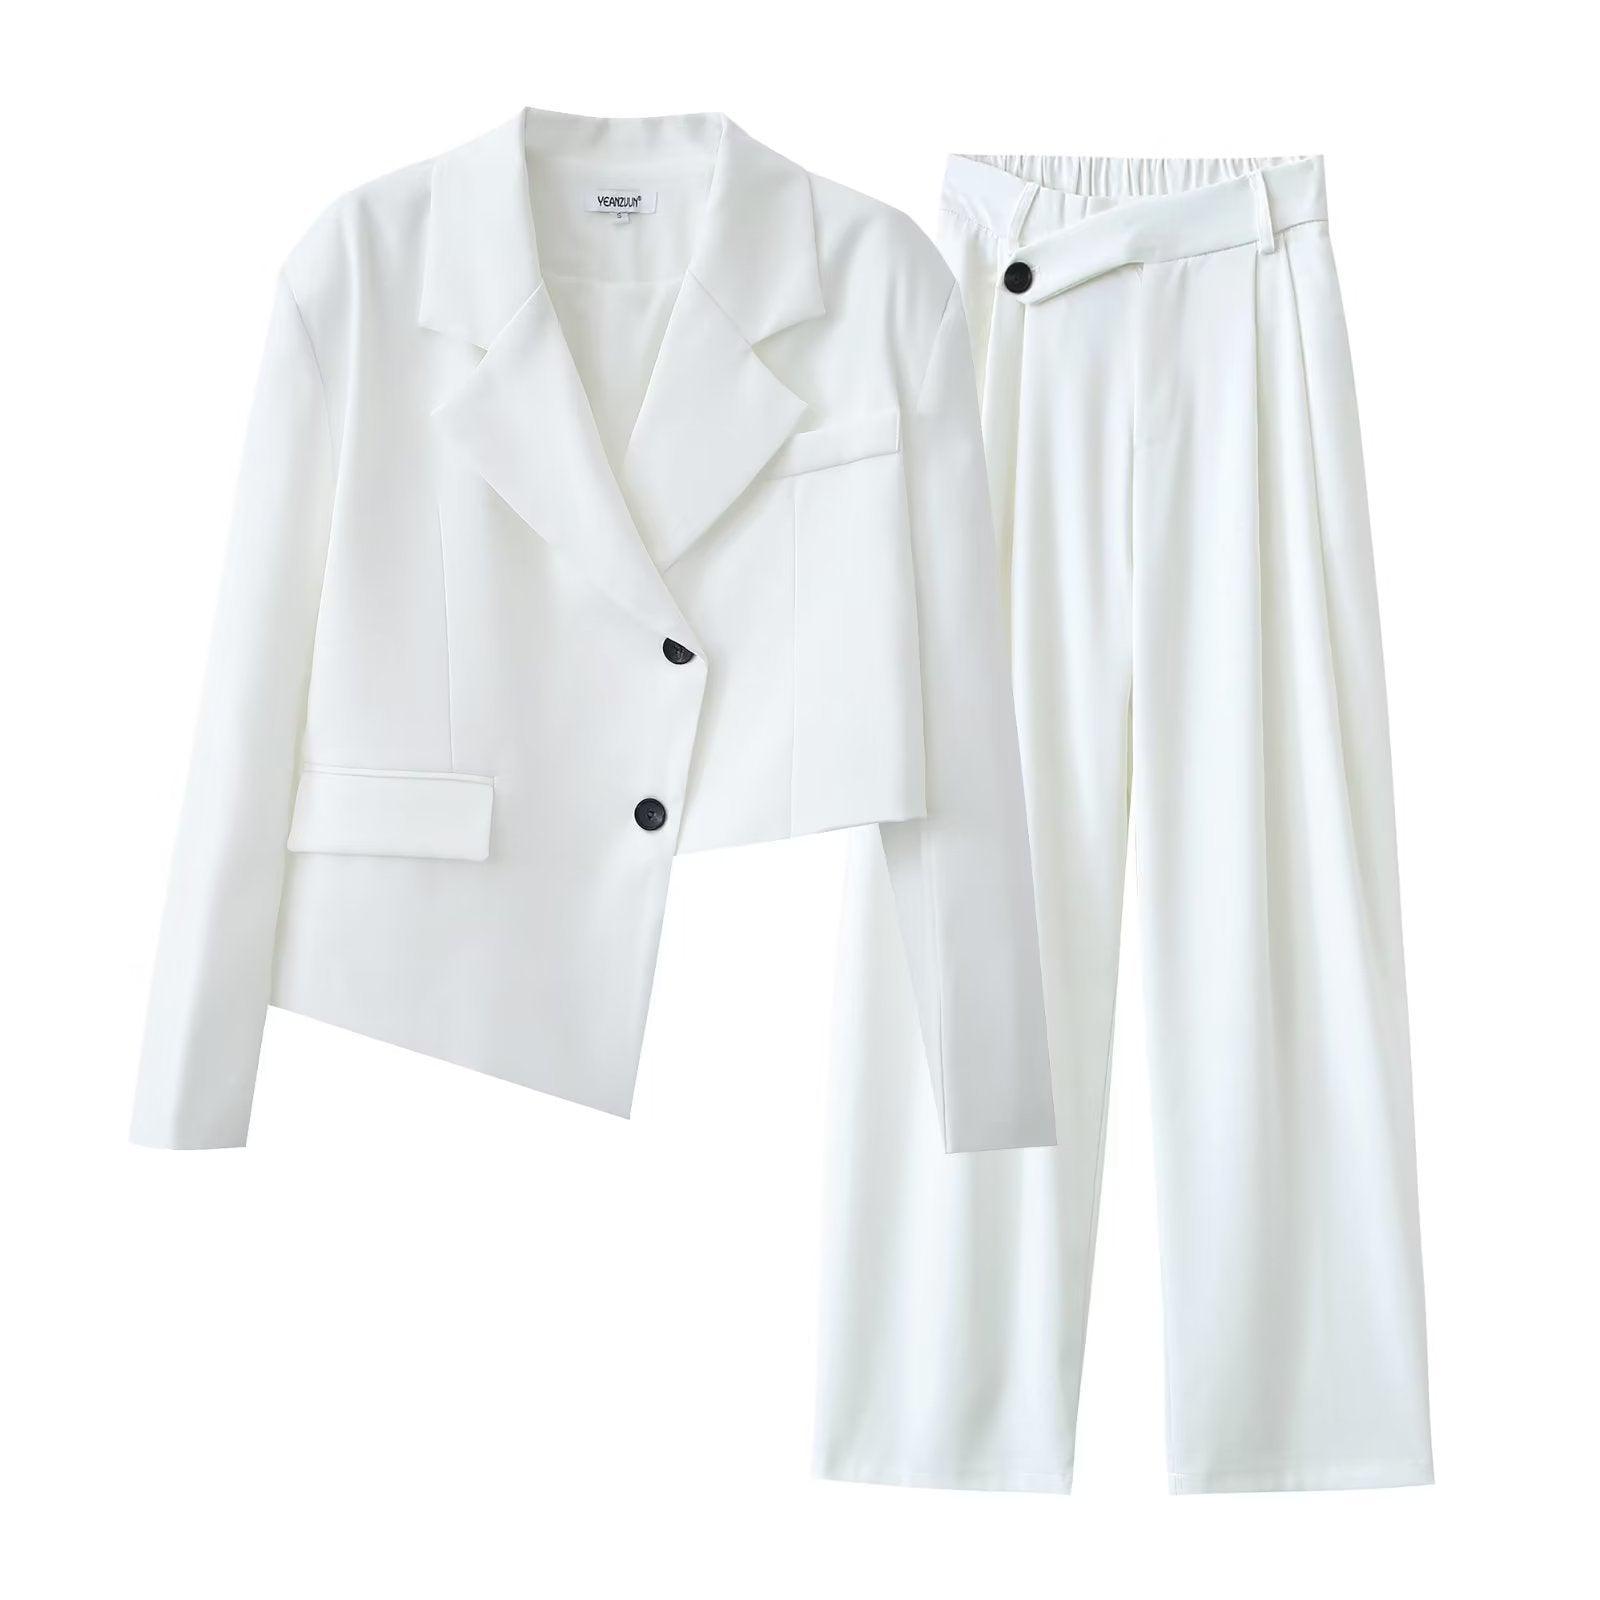 Contemporary Asymmetric Short Blazer & High Waist Wide Leg Pants Suit - ForVanity pant suit, women's clothing, women's suits Pant Suits